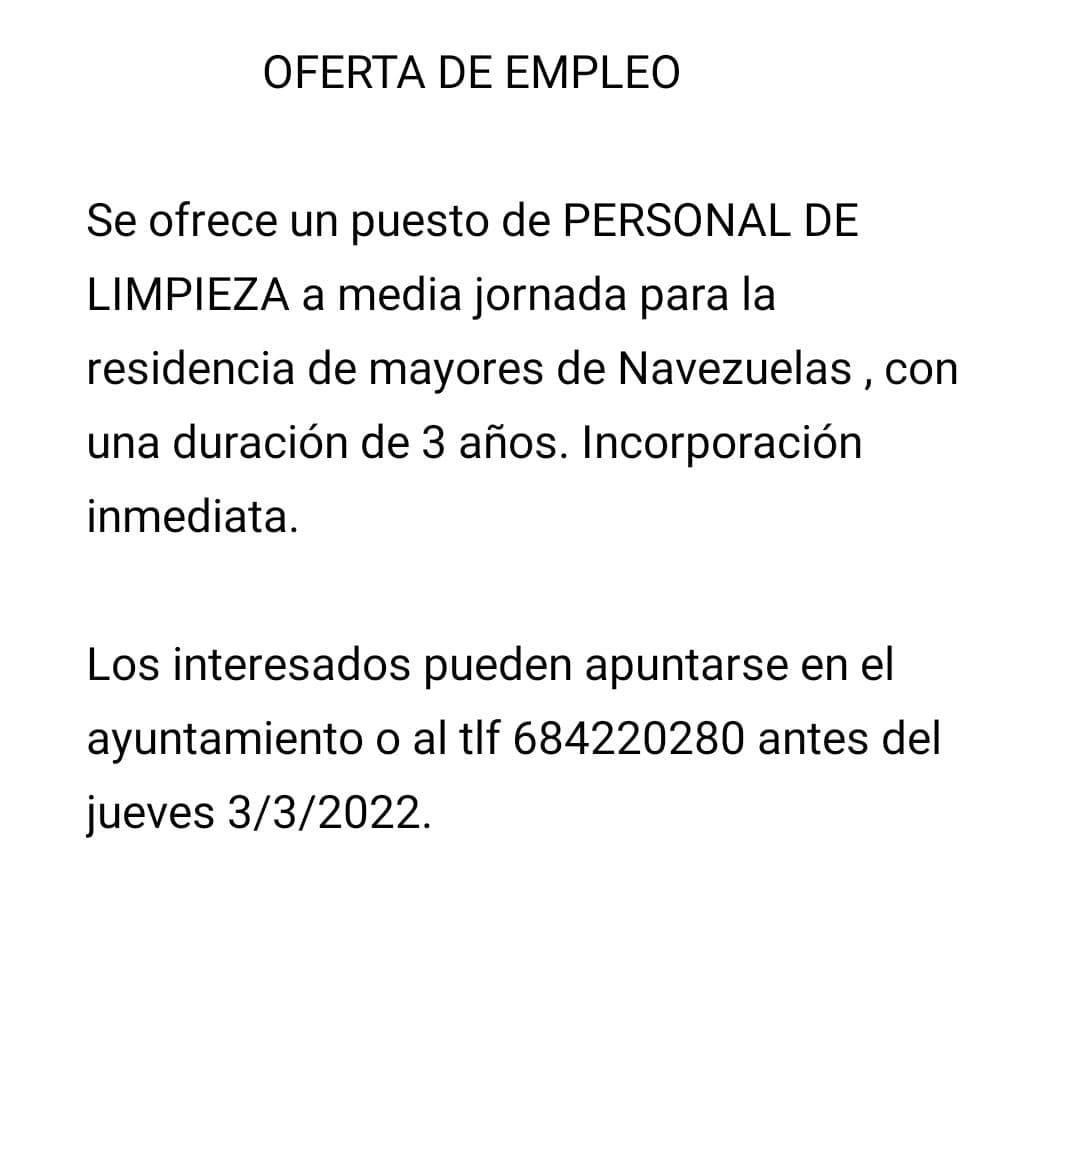 Personal de limpieza para la residencia de mayores (2022) - Navezuelas (Cáceres)